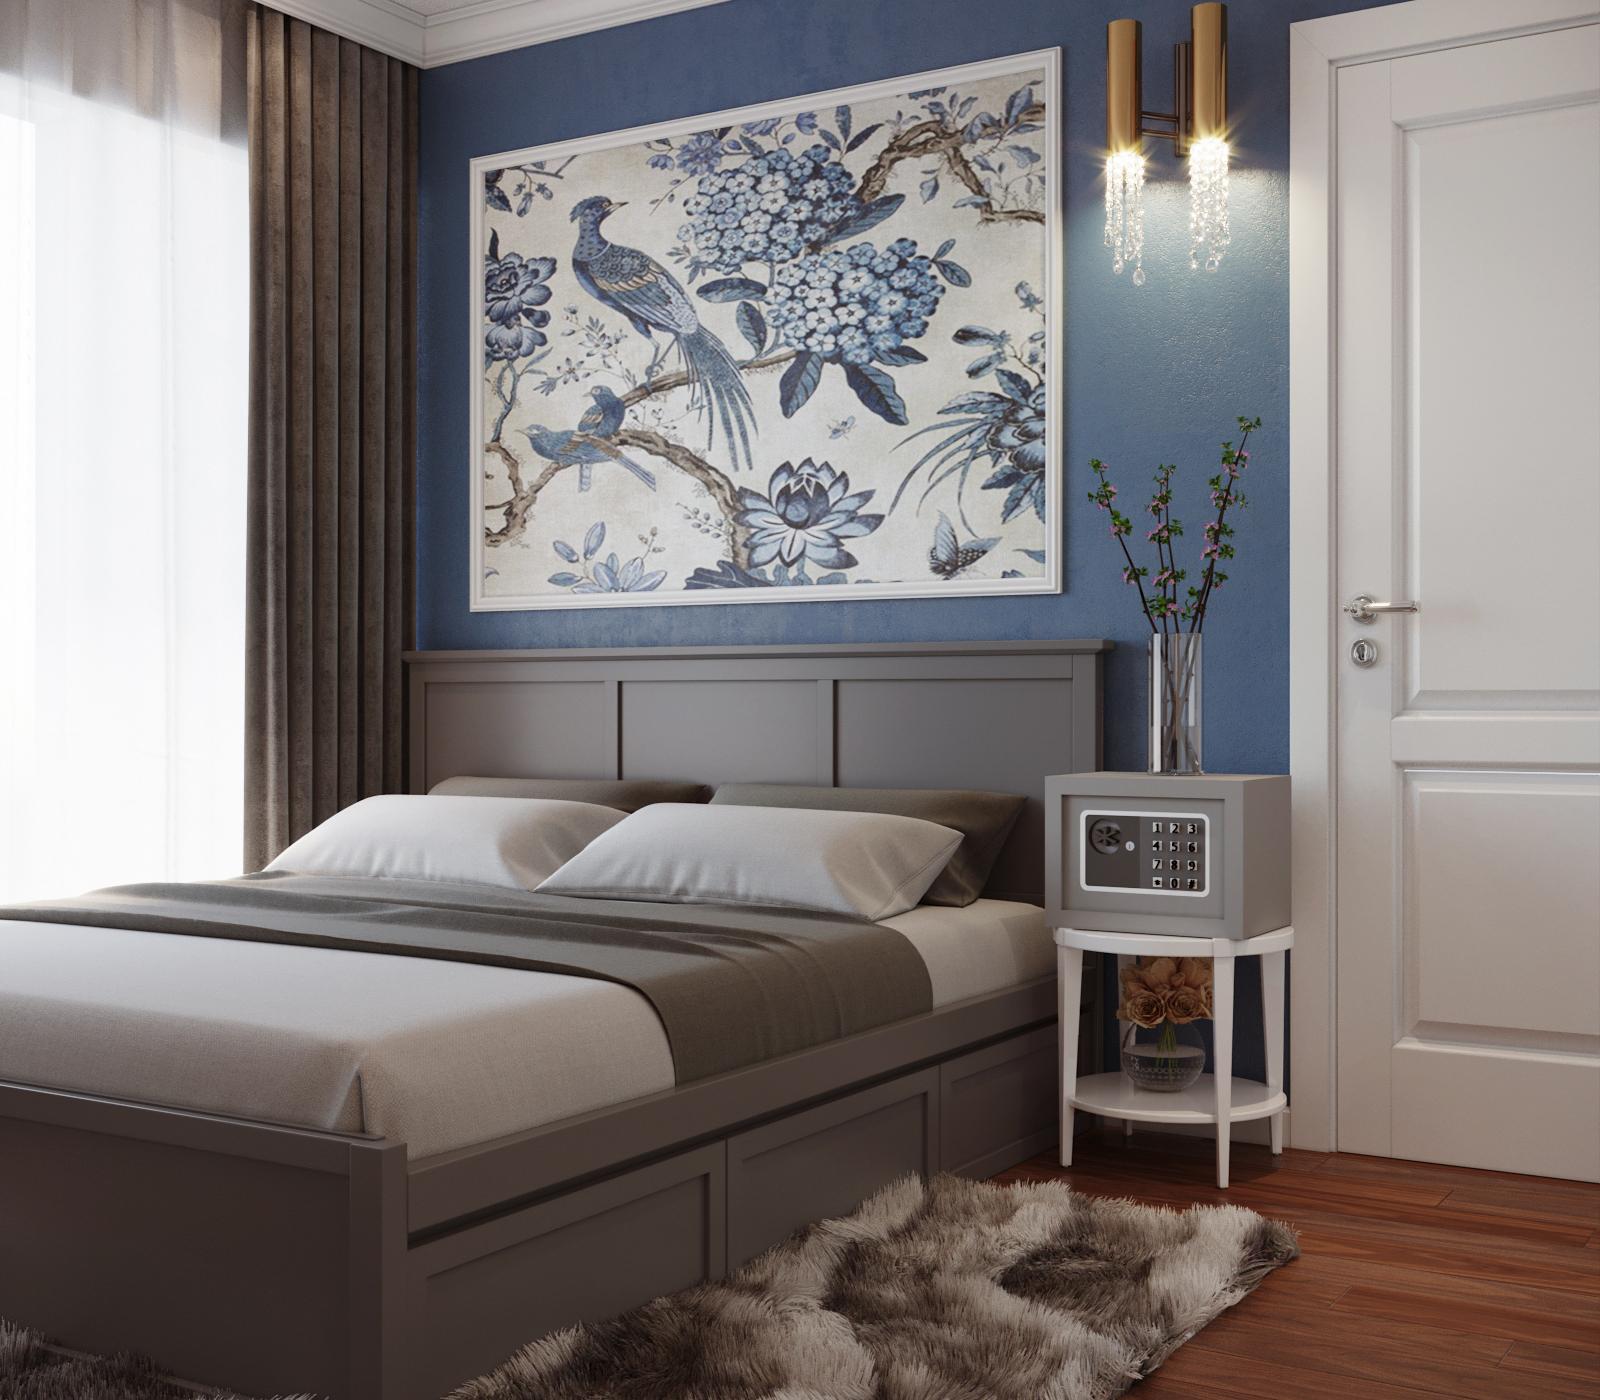 Trong phòng ngủ master của căn hộ 80m2, tường đầu giường màu xanh lam kết hợp cùng tác phẩm nghệ thuật tạo điểm nhấn sinh động, mát mắt và nổi bật hẳn so với phần còn lại của căn phòng màu trung tính chủ đạo.